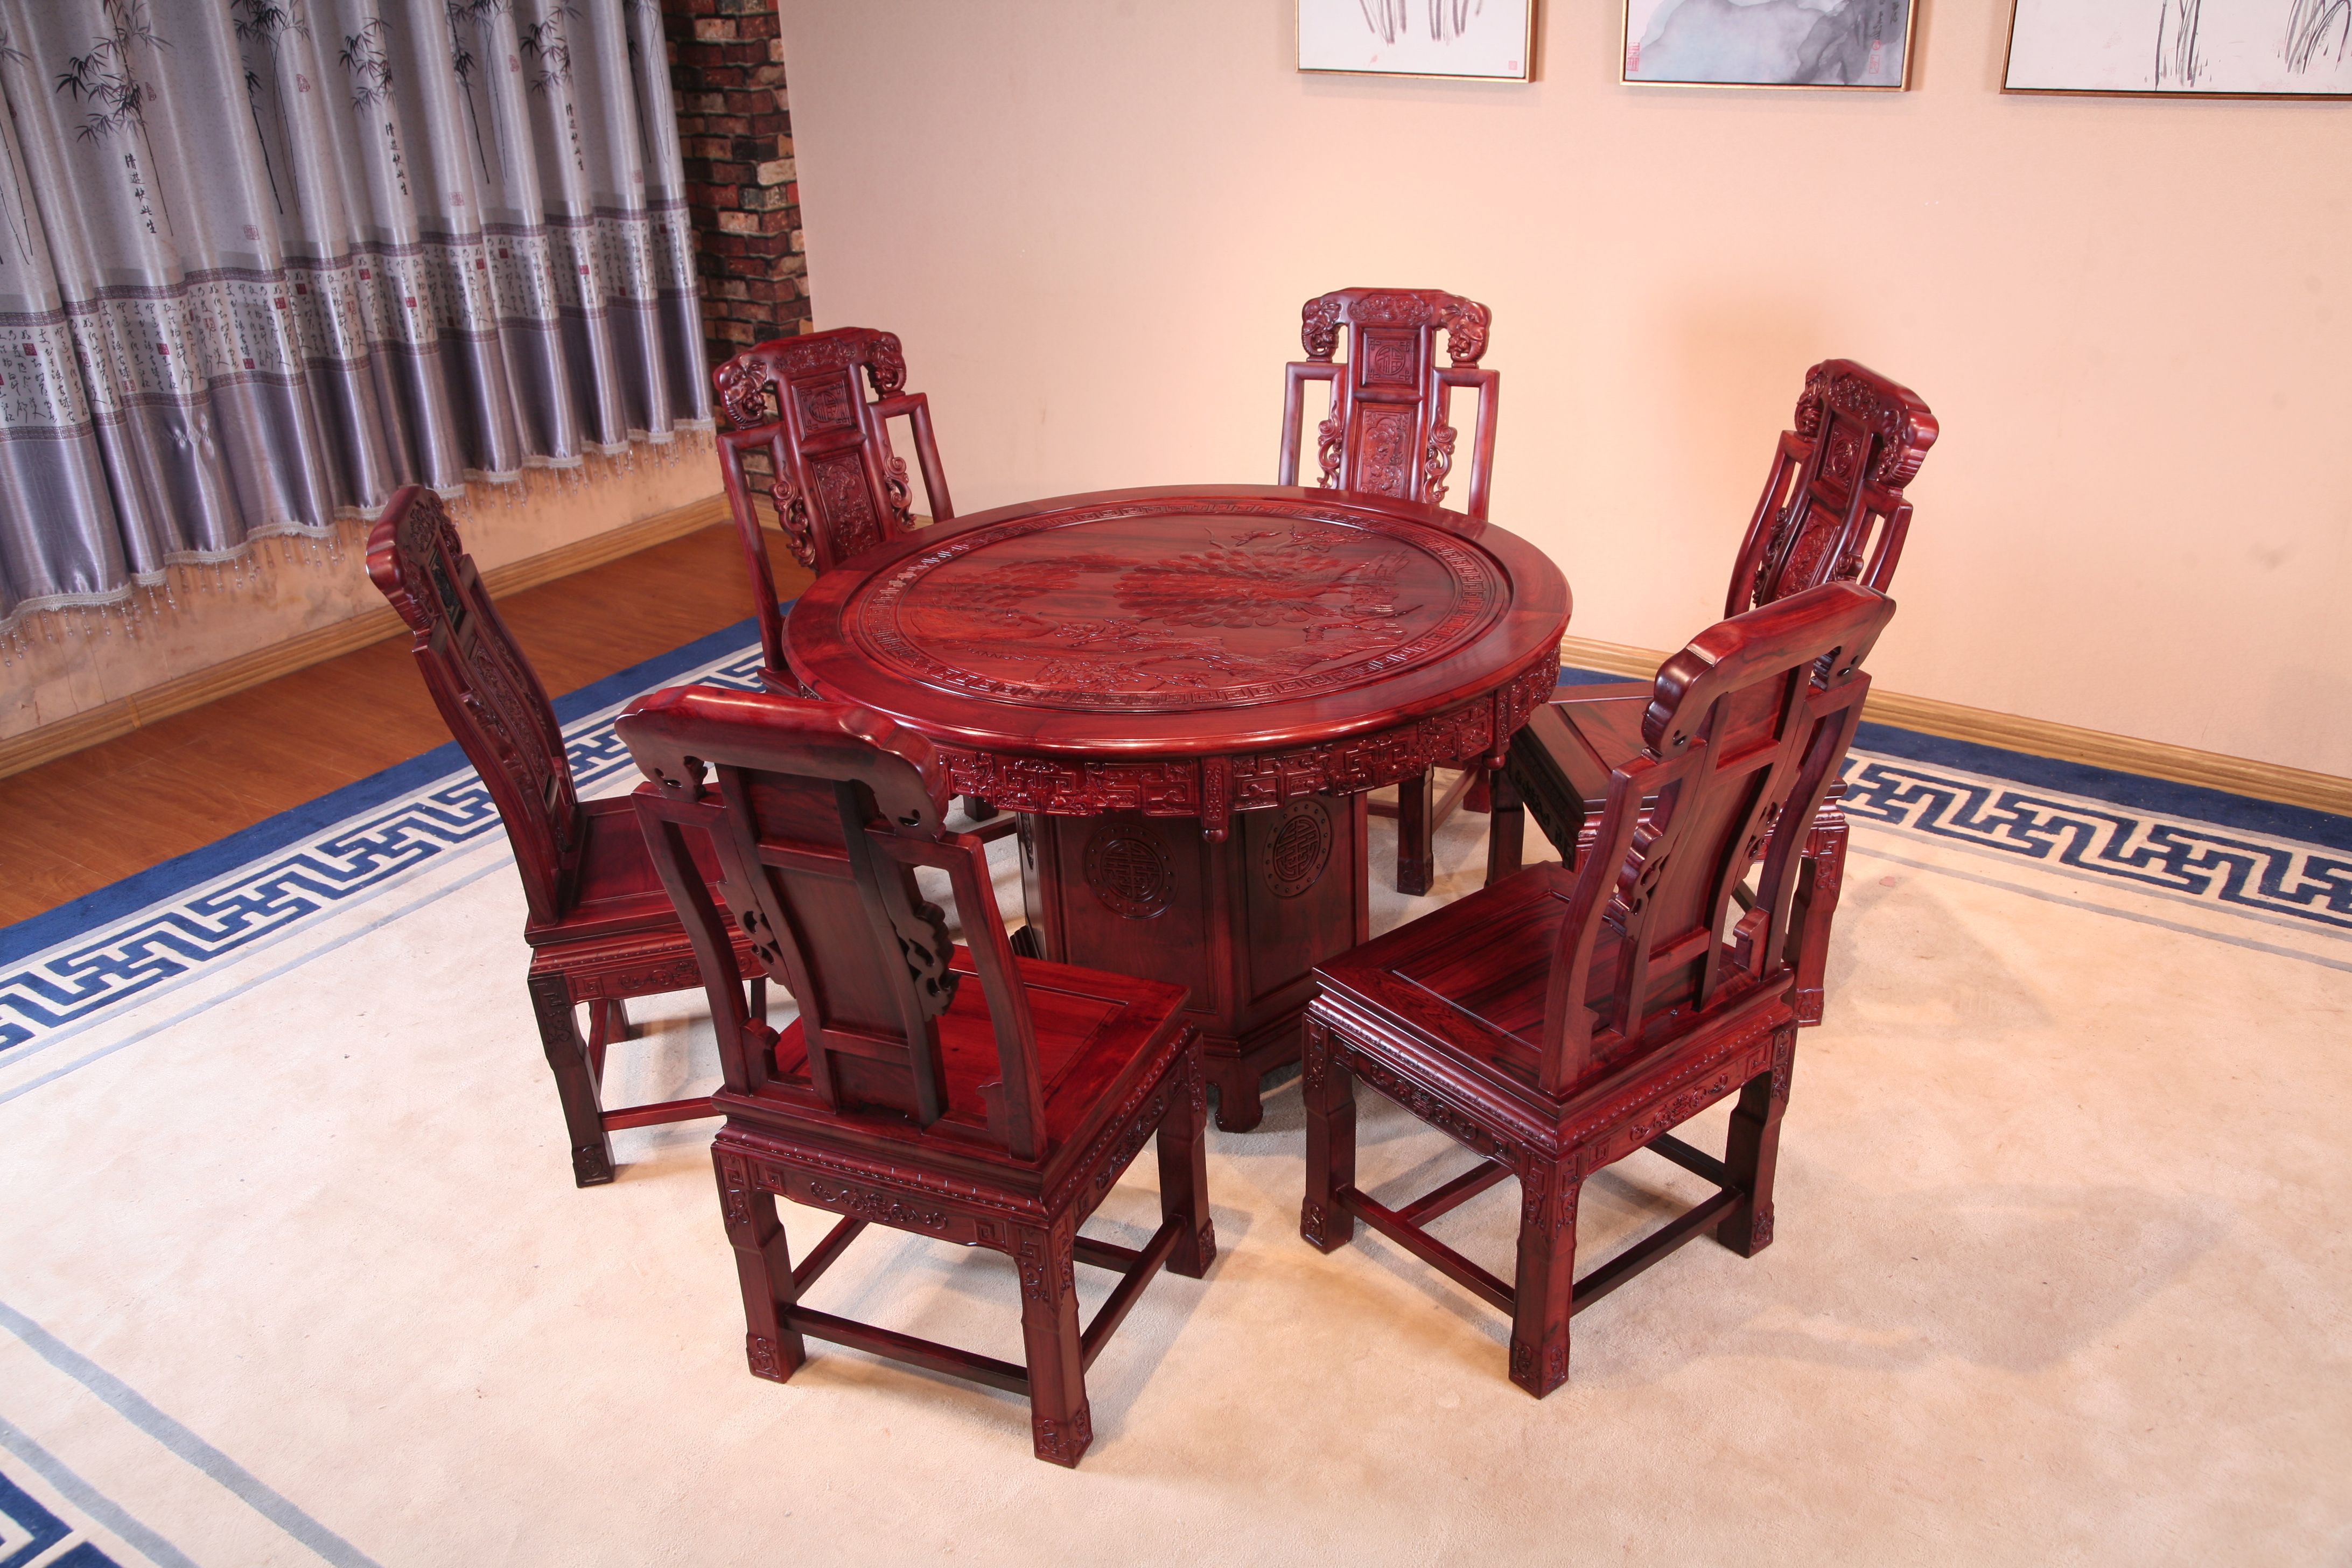 东阳和谐红木家具厂家直销红木家具大红酸枝家具东阳和谐红木大红酸枝圆桌椅组合图片